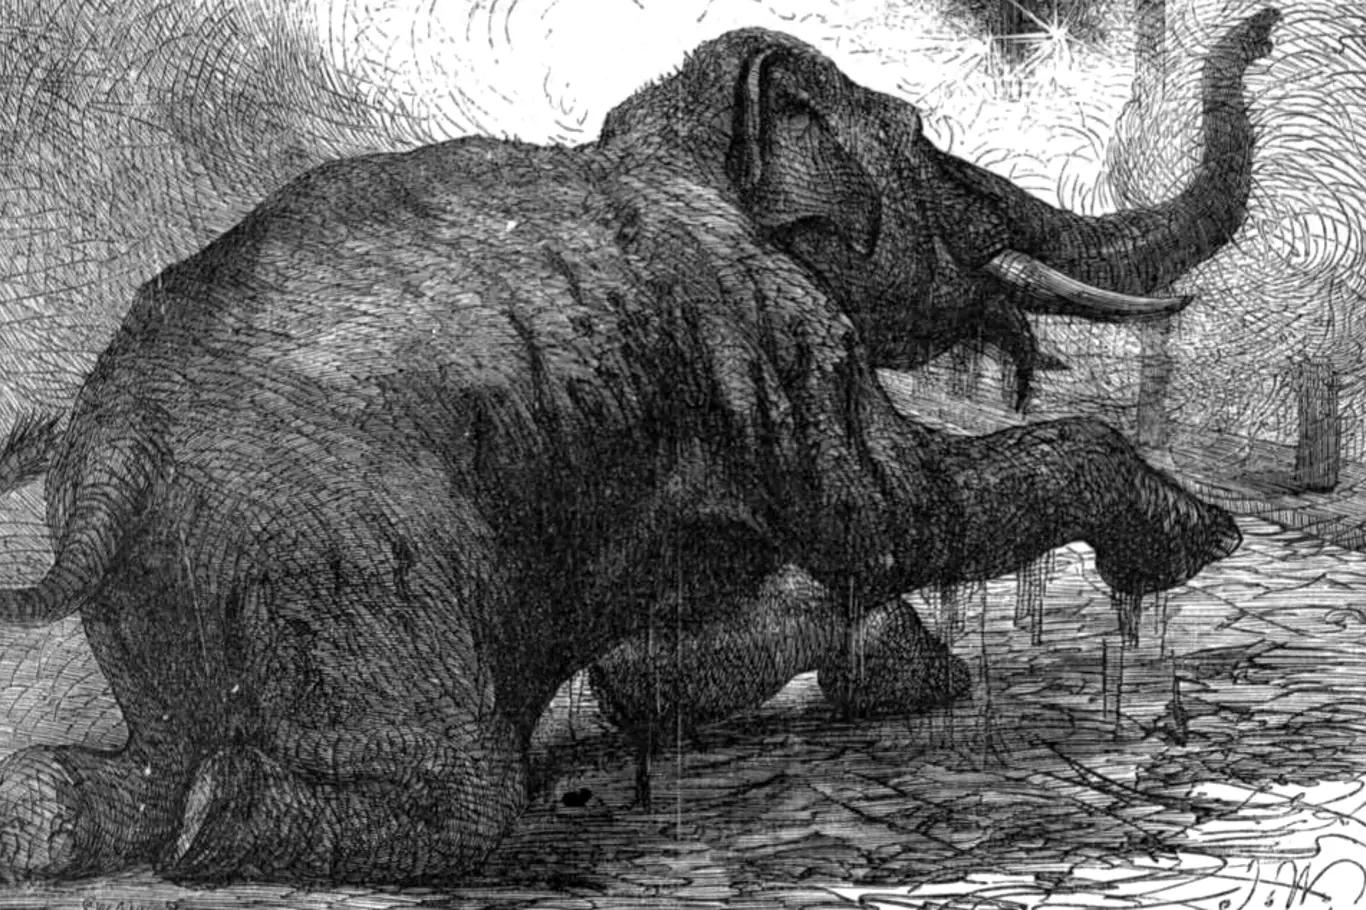 Sloni byli používáni jako zbraň k rozdrcení